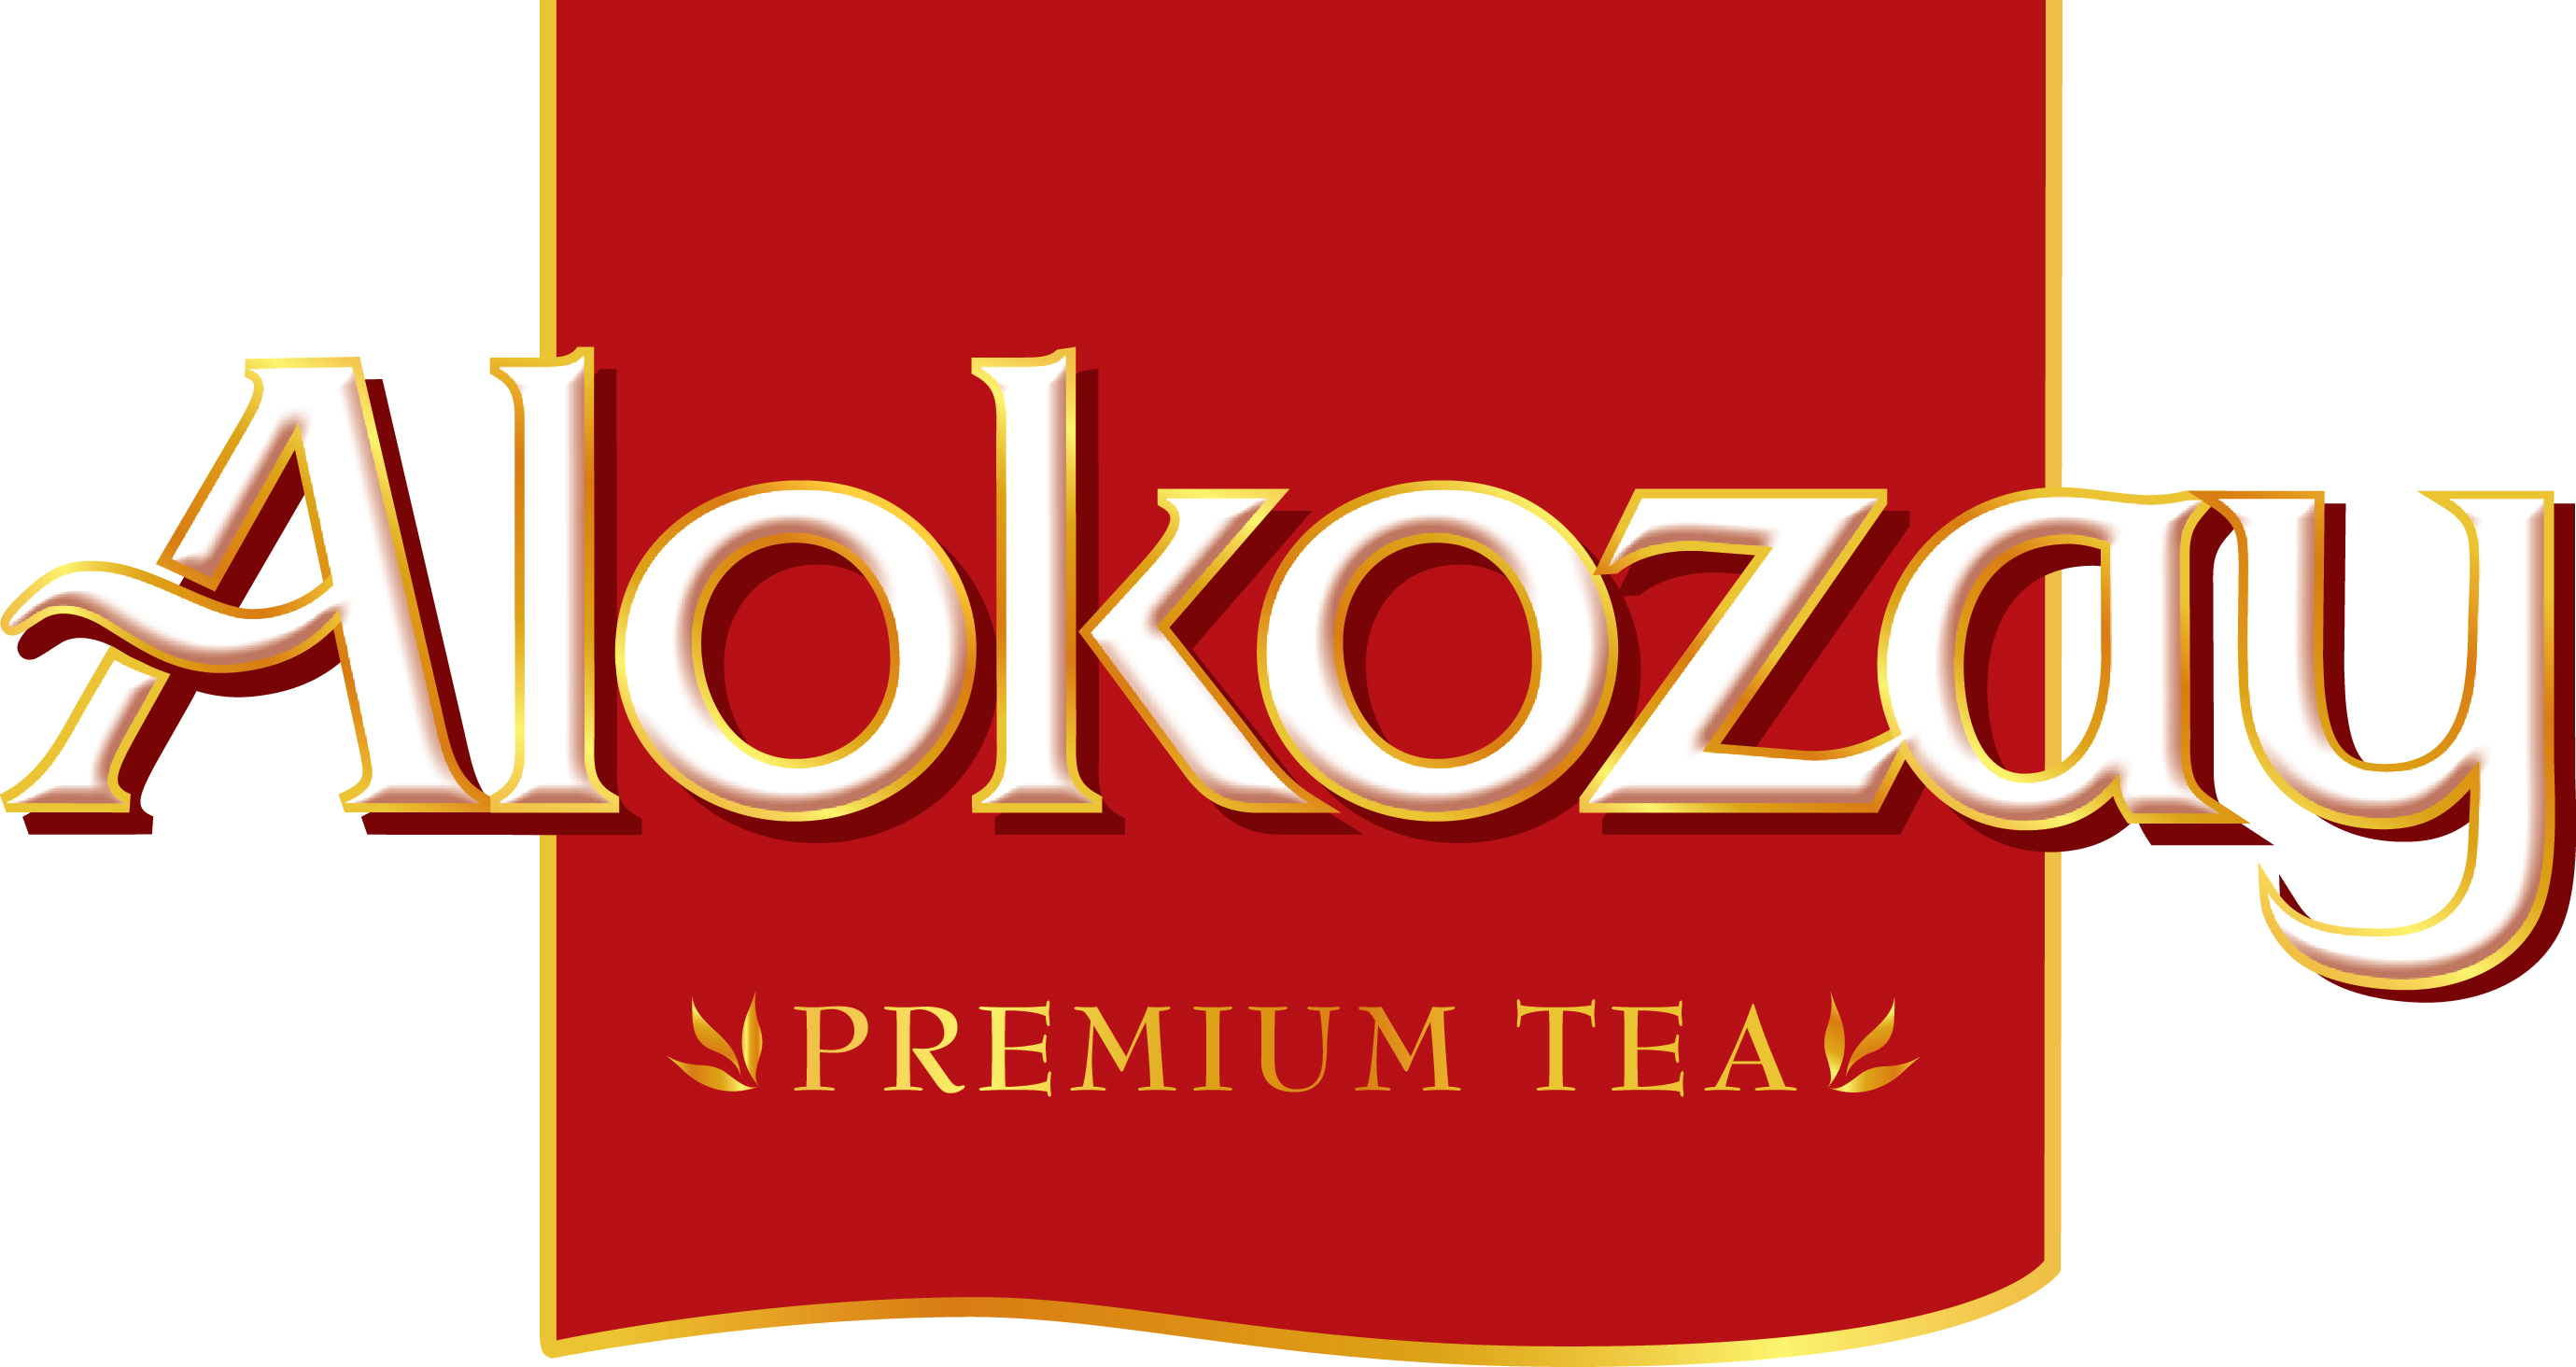 Alokozay Logo photo - 1